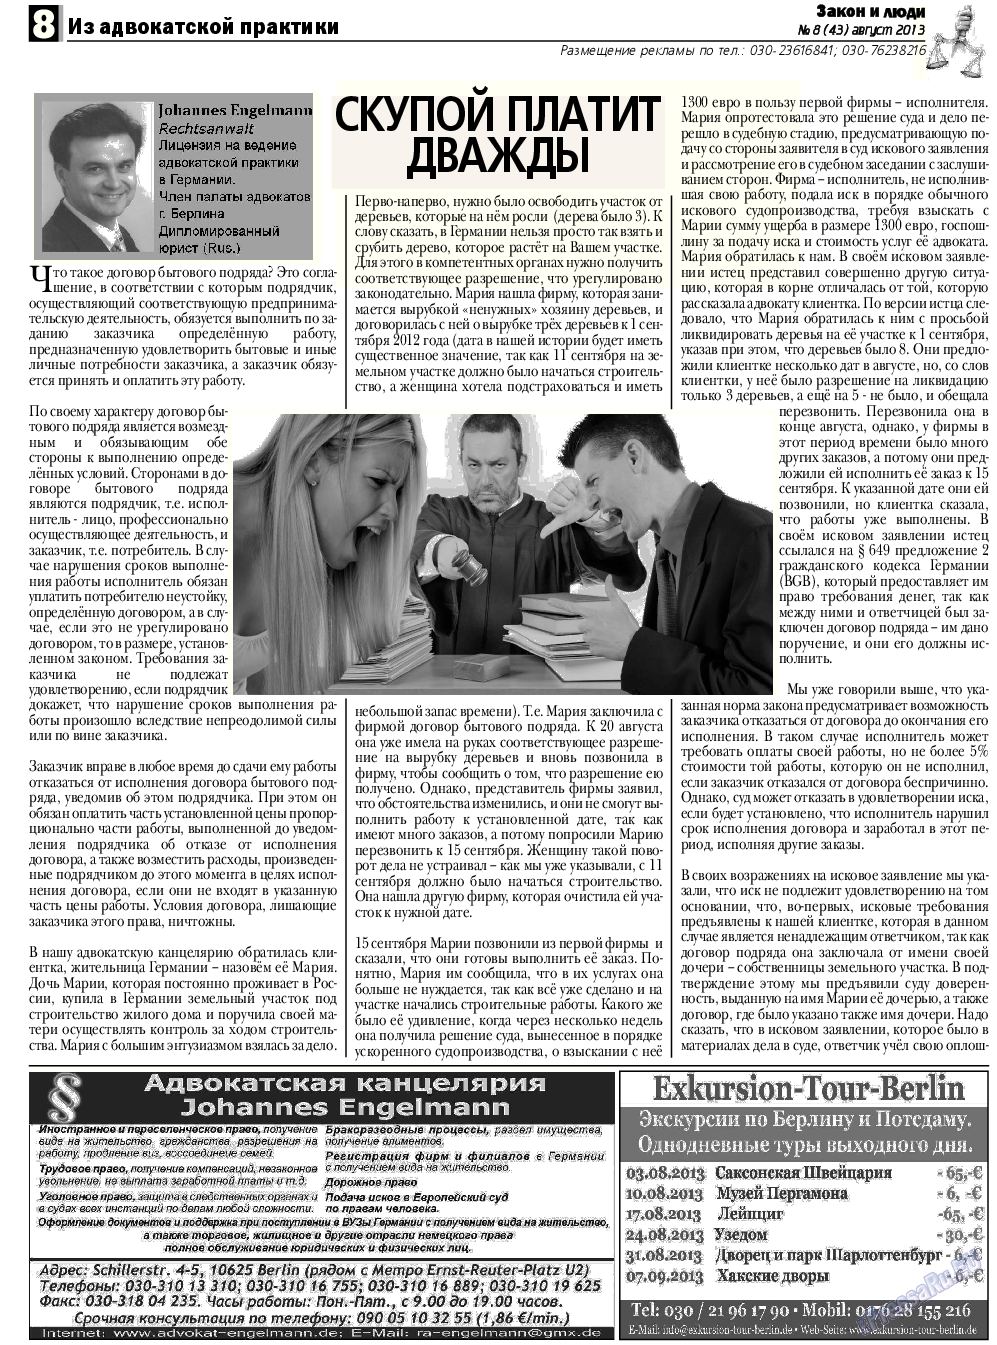 Закон и люди, газета. 2013 №8 стр.8